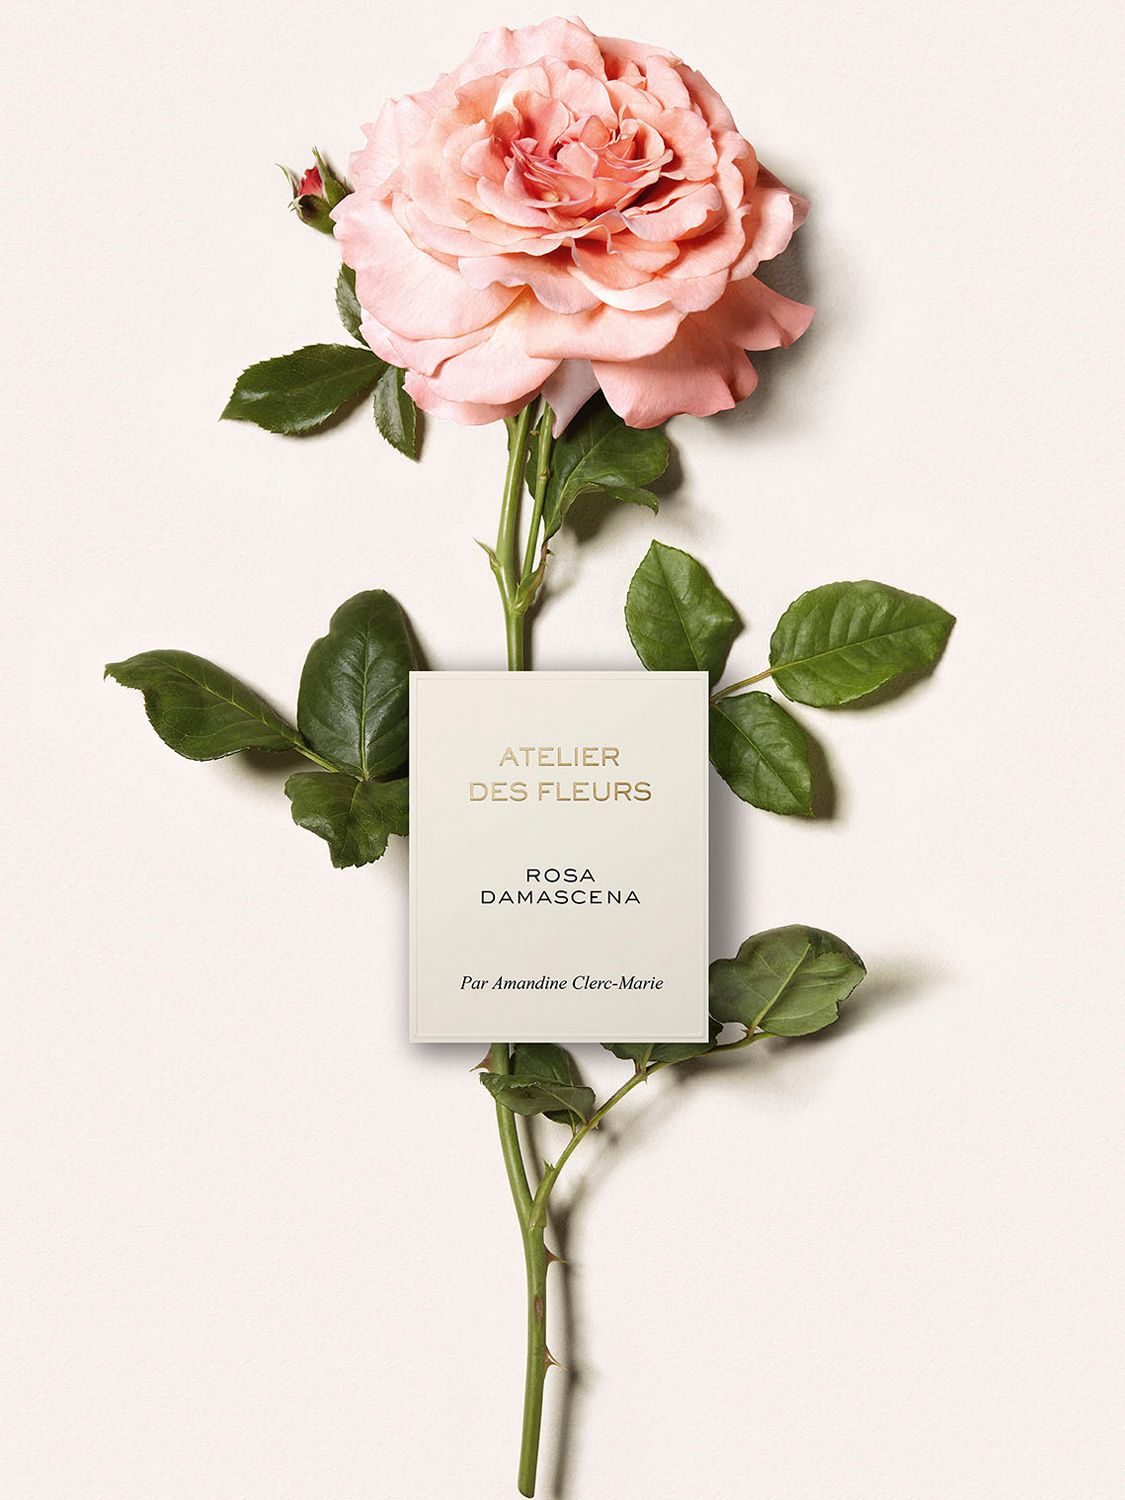 Chloé Atelier des Fleurs Rosa Damascena Eau de Parfum, 50ml 4